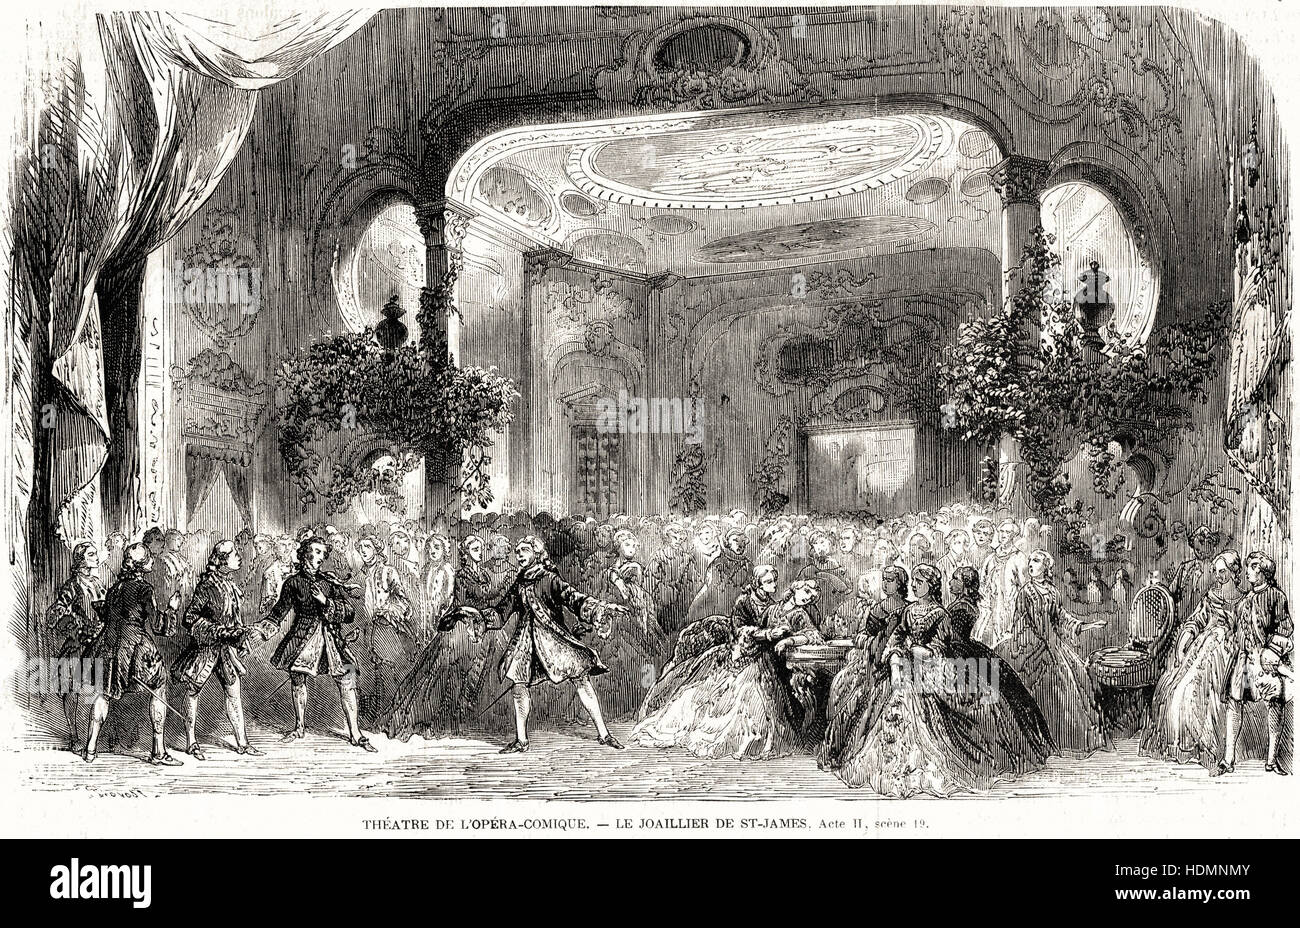 Gravure Illustration 1862 Théâtre de l'Opéra-Comique - Le joaillier de St. Banque D'Images